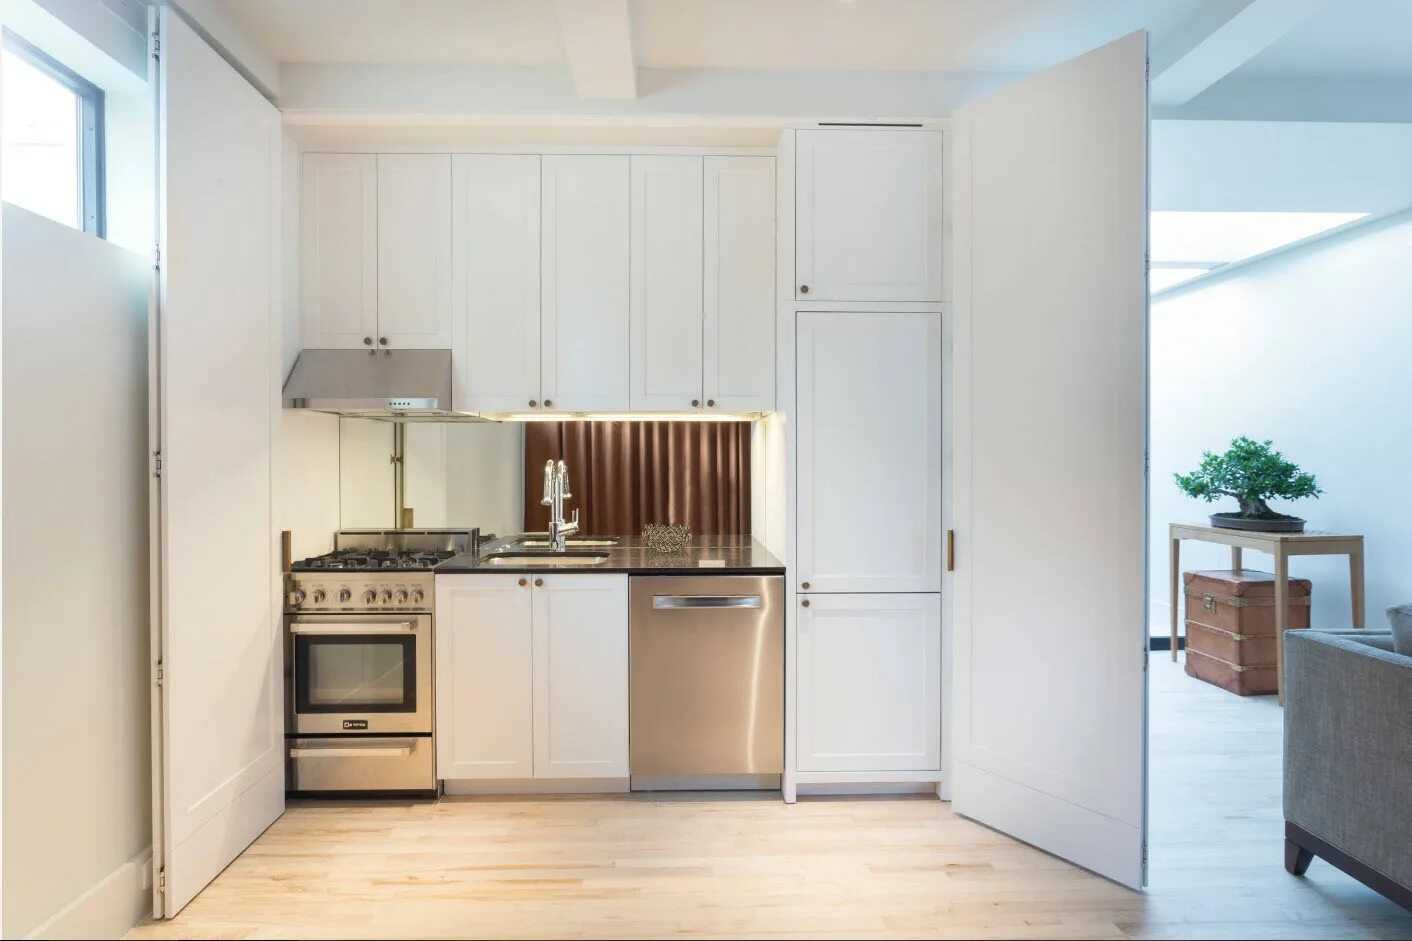 Кухни где выбрать. Мини кухня с холодильником. Холодильник в интерьере кухни. Кухонные гарнитуры для маленькой студии. Маленькая кухня с холодильником.